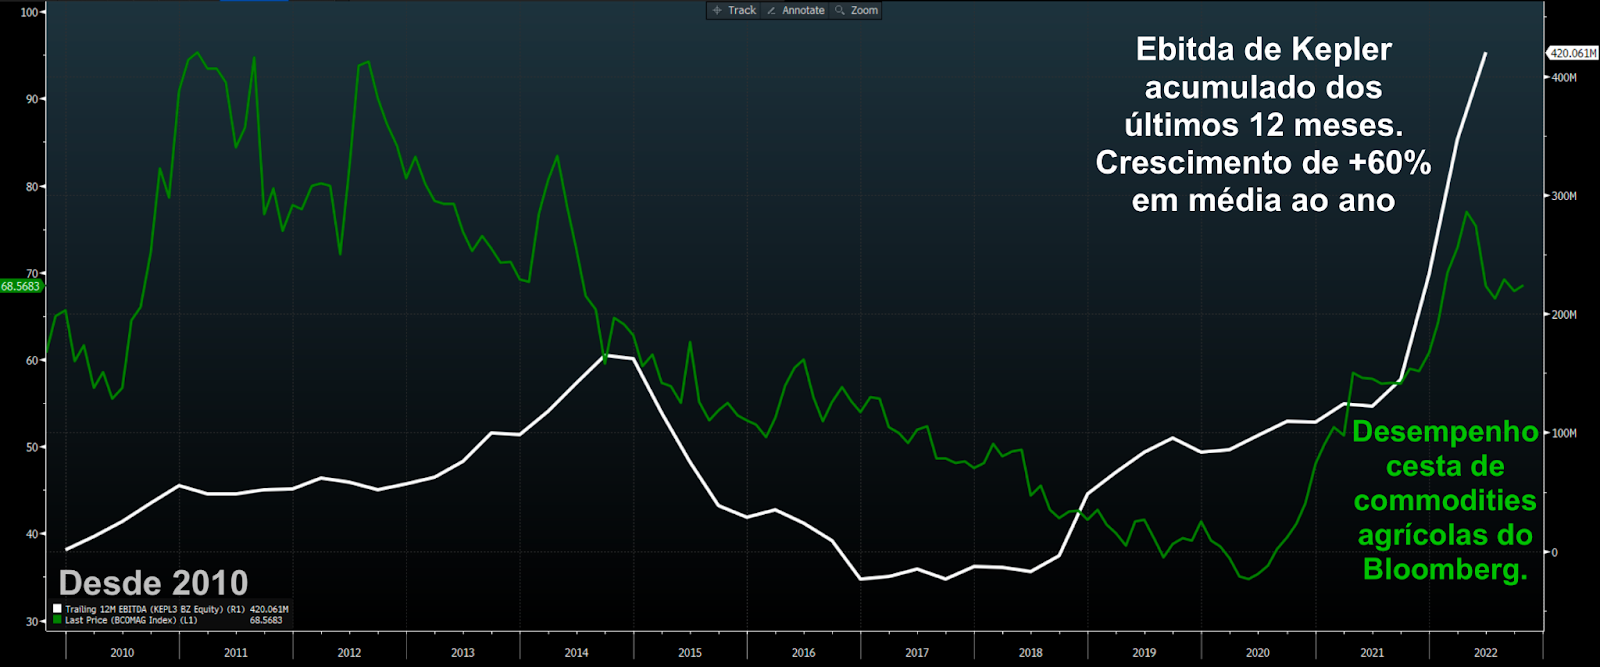 Gráfico apresenta Ebitda acumulado dos últimos 12 meses de KEPL3 (linha branca) e cesta de commodities agrícolas do Bloomberg (verde). 